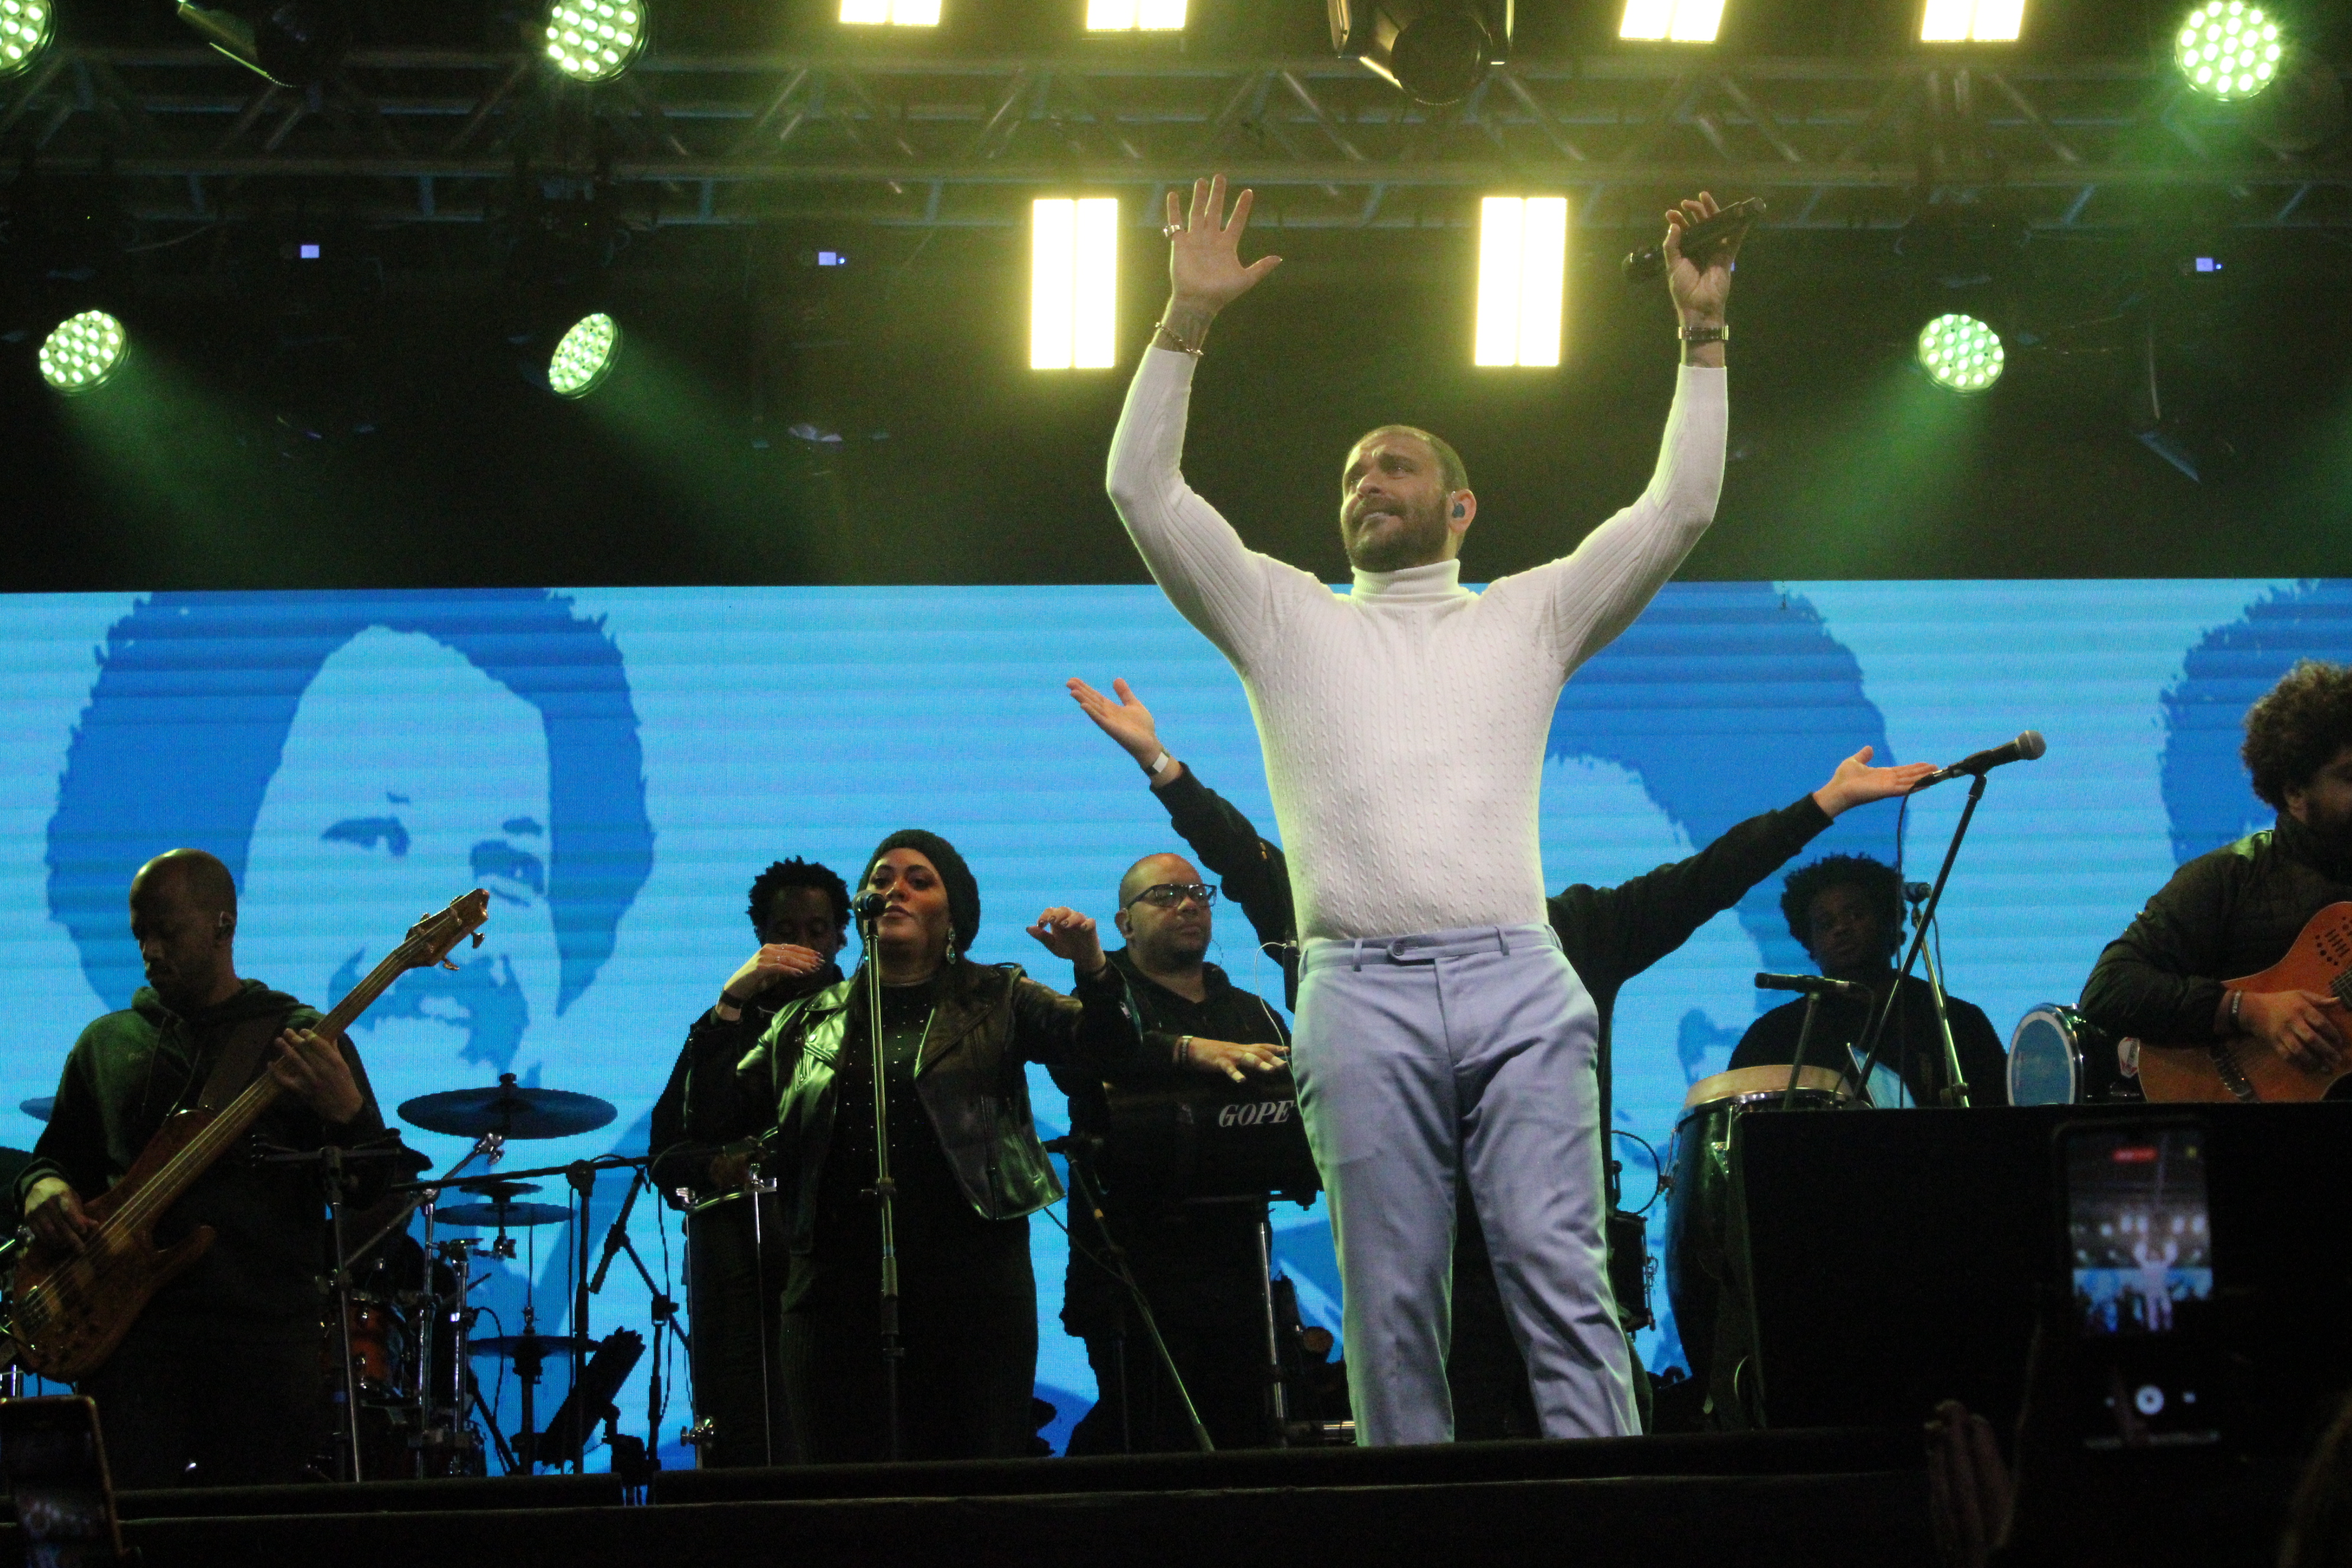 Foto do cantor no centro do palco erguendo os braços, segurando o microfone com a banda atrás.